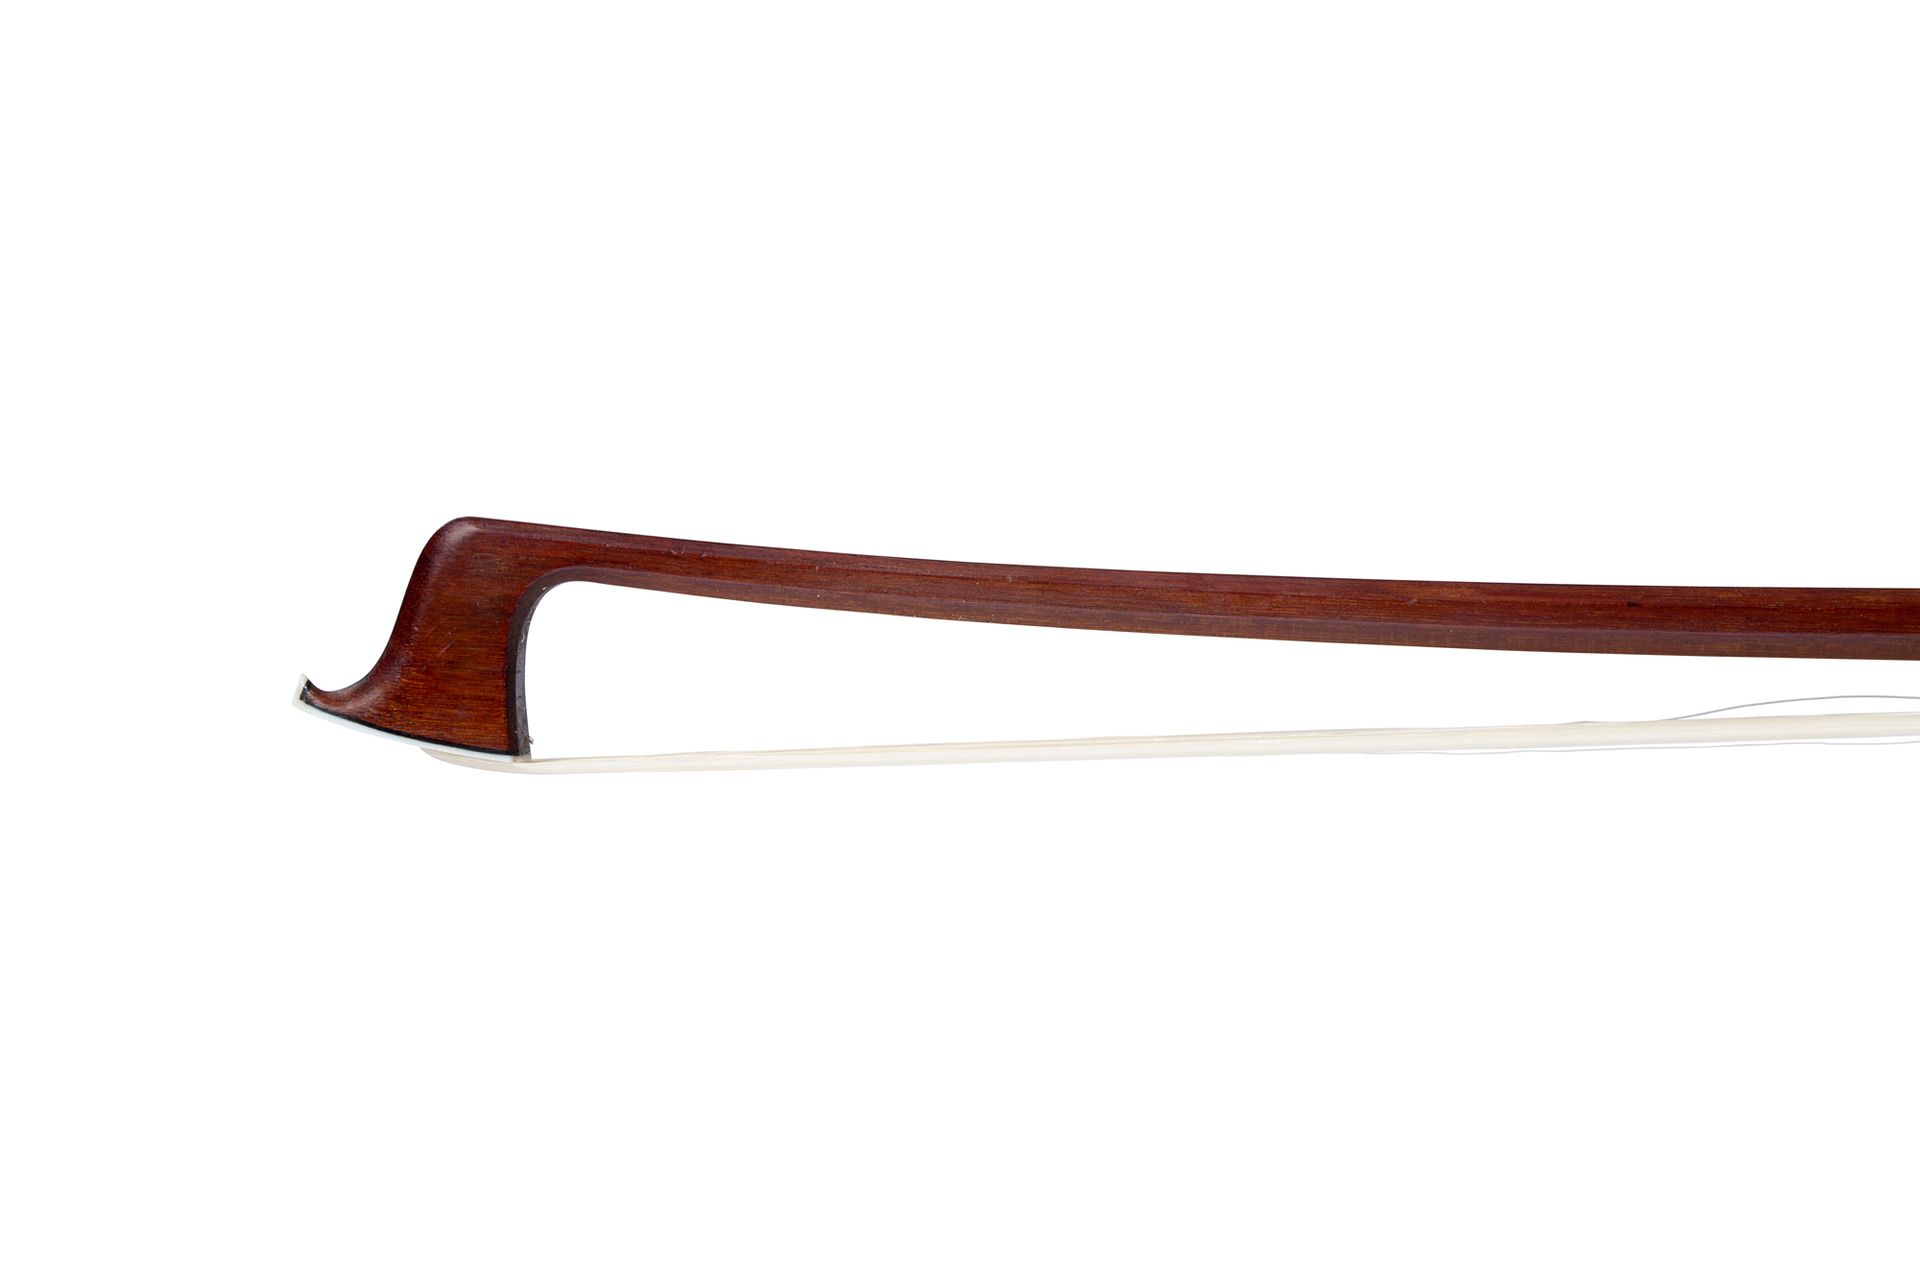 Null ~ 小提琴弓由François Lotte制作
大约1940年，有铁的标记
非常好的伯南布哥木棍，象牙和银质的青蛙。
同时期的镍银把手。
状态良好：弓&hellip;